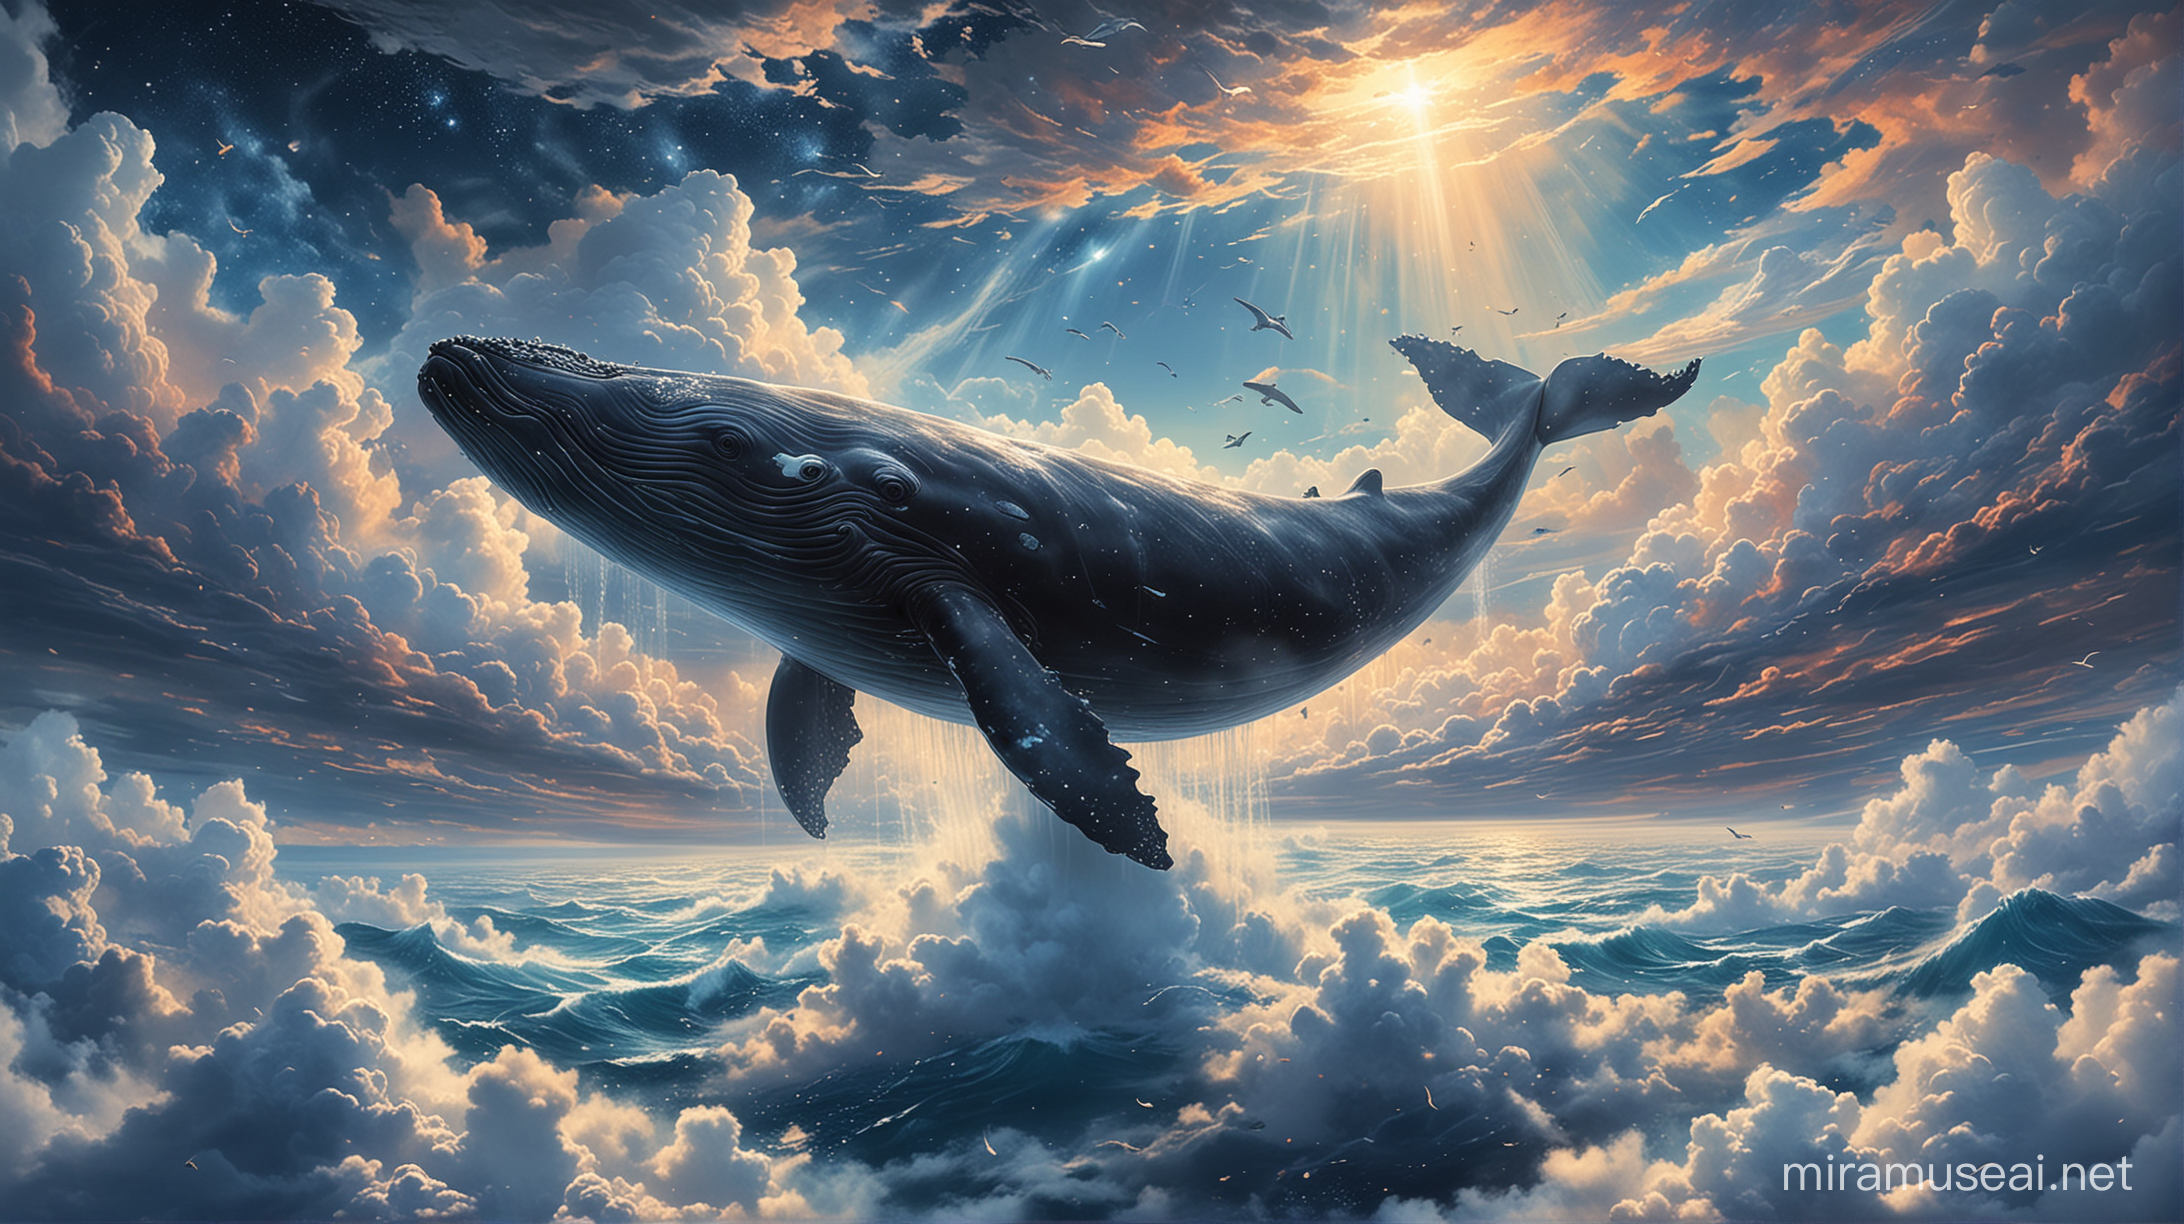 在无边无际的云海中，一只巨大的鲸鱼正在自由自在地翻身。它的身躯在云海中如同一座庞然大物，随着云海的翻卷，它展示着自己的优雅动作。与此同时，天空中繁星点点，星星的光芒在云海的轻盈薄雾中闪烁。整个场景仿佛是一幅神秘而壮美的画面，唤起人们对自然奥妙的无限想象。